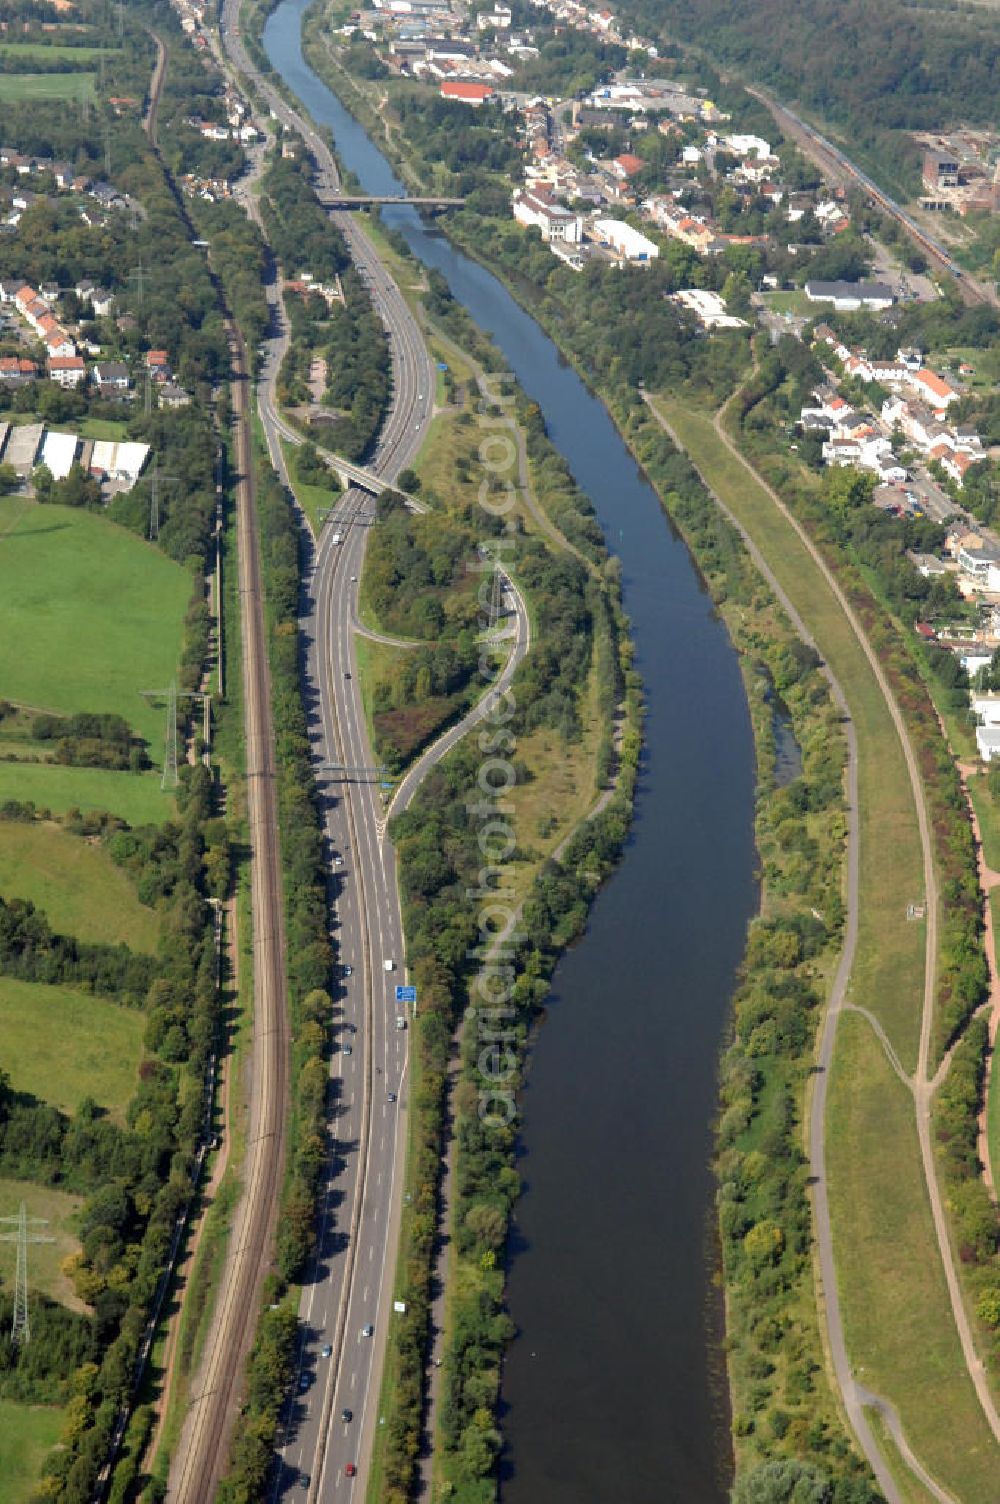 Aerial photograph Saarbrücken - Blick aus Osten entlang der Saar in Saarbrücken im Saarland. Am linken Saarufer erstreckt sich die Autobahn 620 mit der Ausfahrt Saarbrücken-Klarenthal im Stadtteil Gersweiler. Am rechten Ufer erstreckt sich der Stadtteil Altenkessel. View from east along the Saar river.